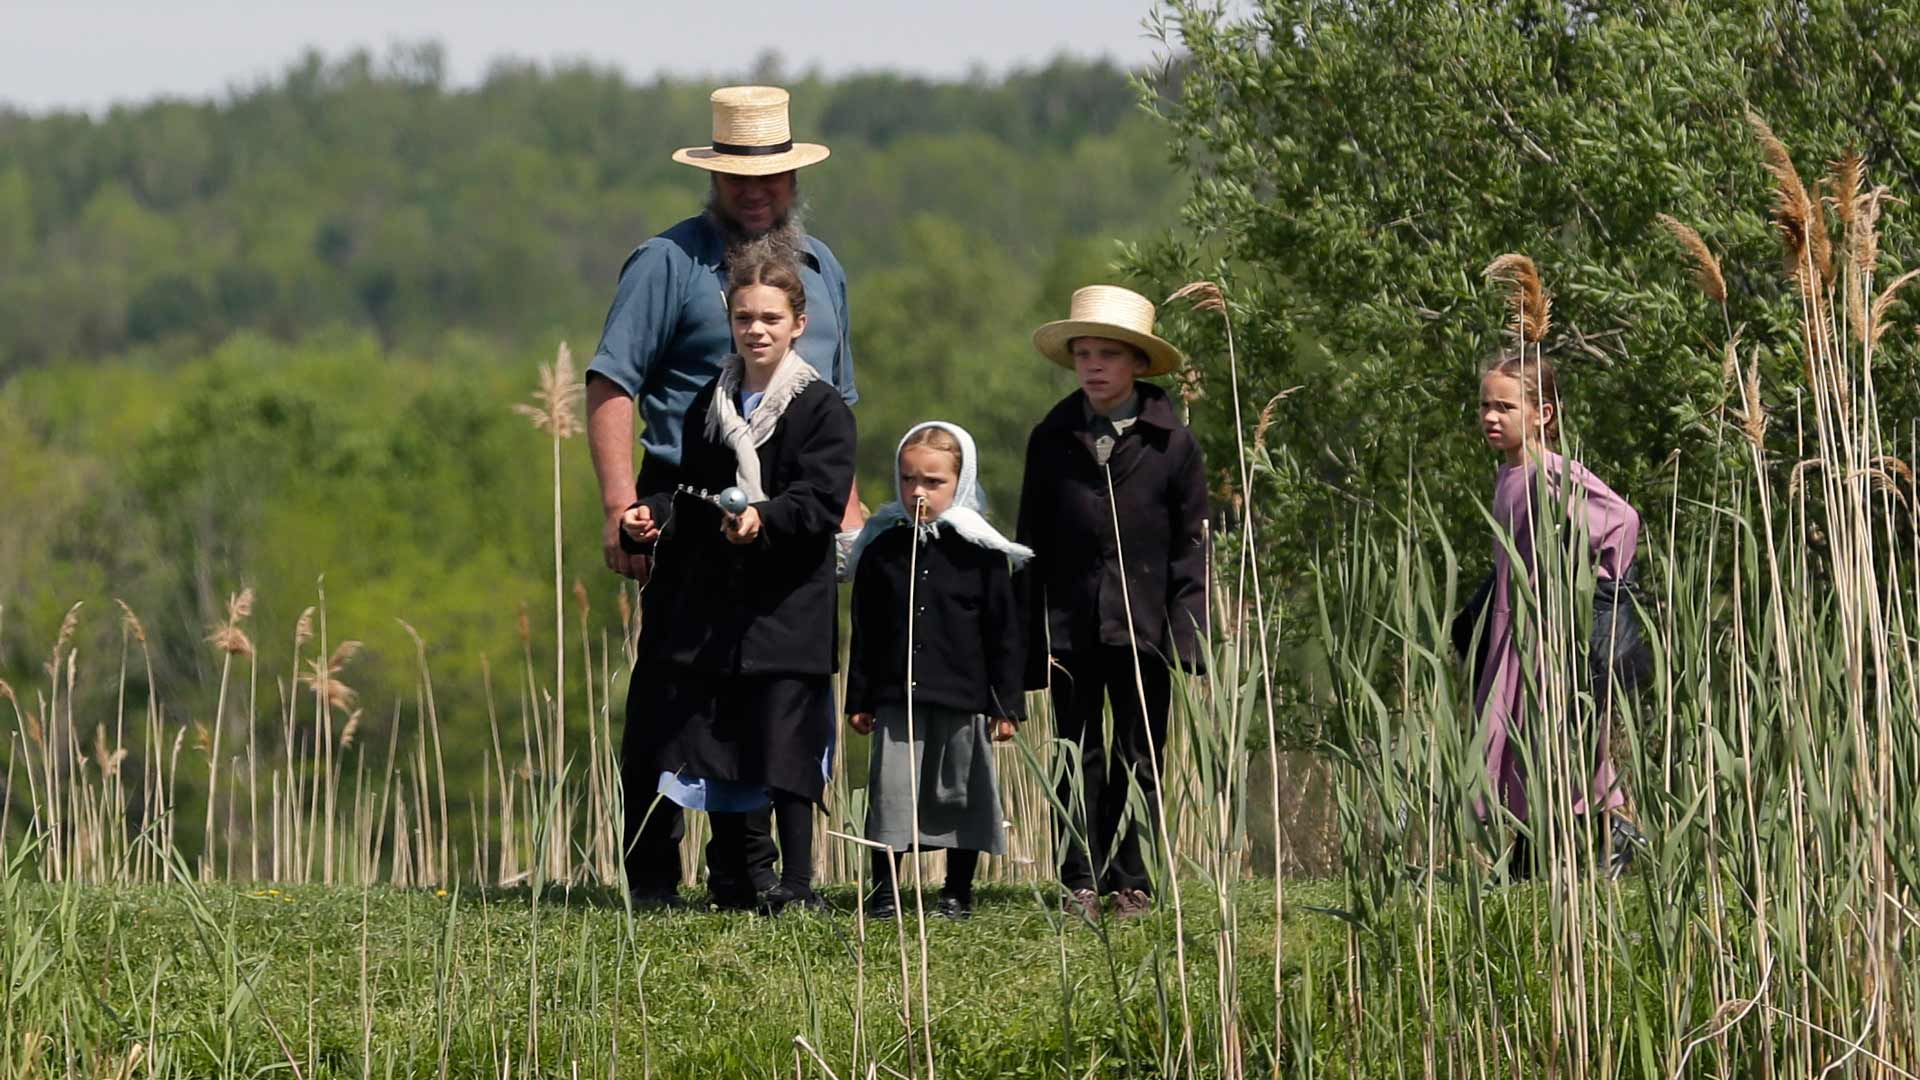 Una mutación genética en los Amish alarga su vida 10 años